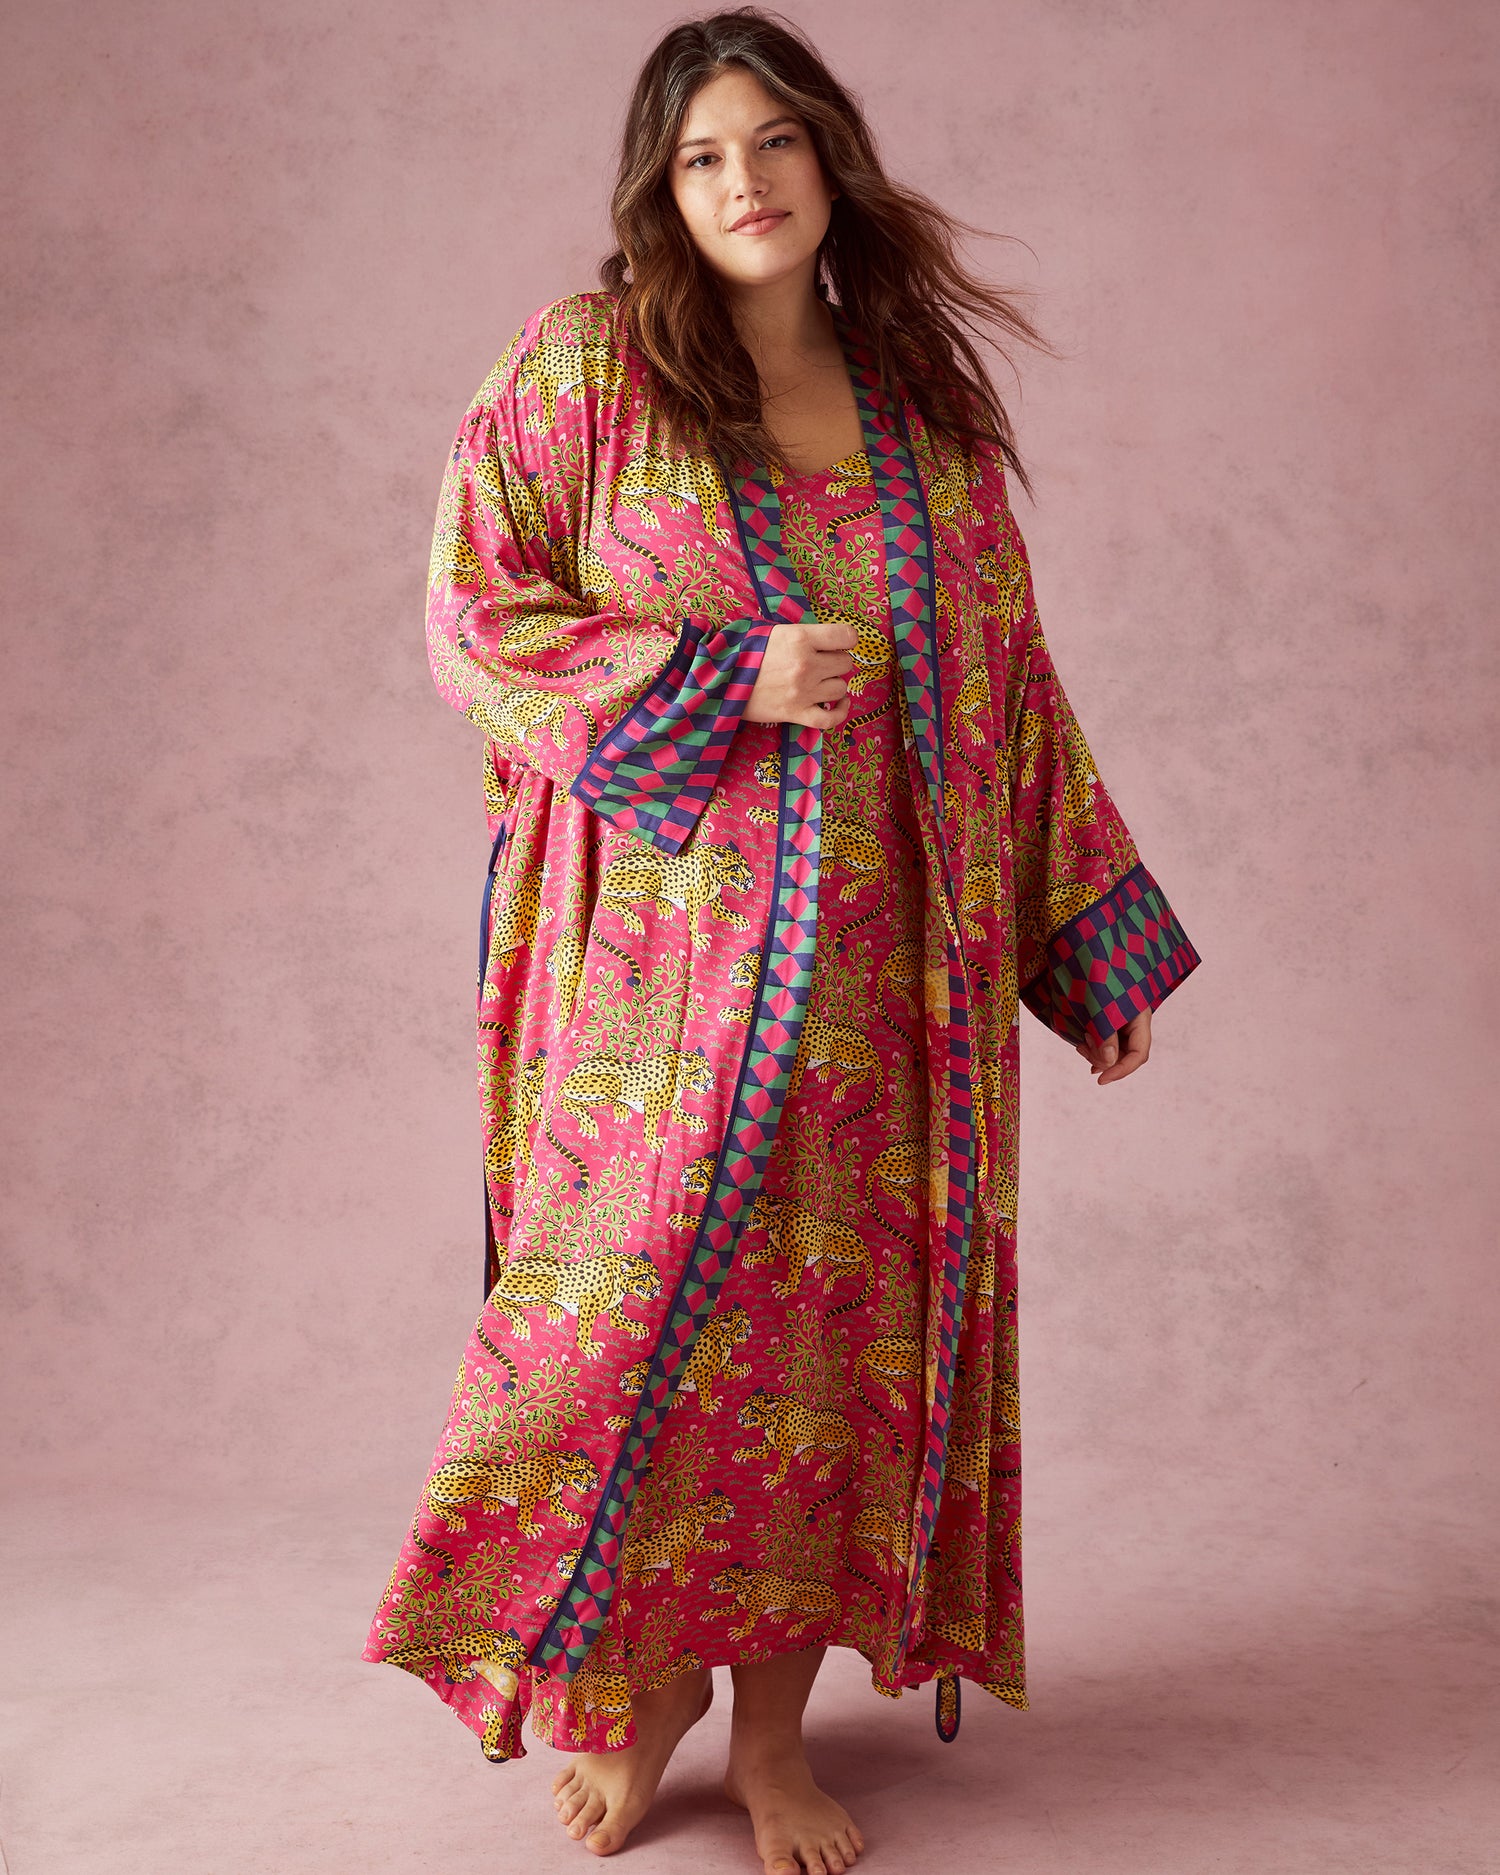 Bagheera - Satin Chic to Sleep Nightie and Satin Robe Set - Hot Pink - Printfresh